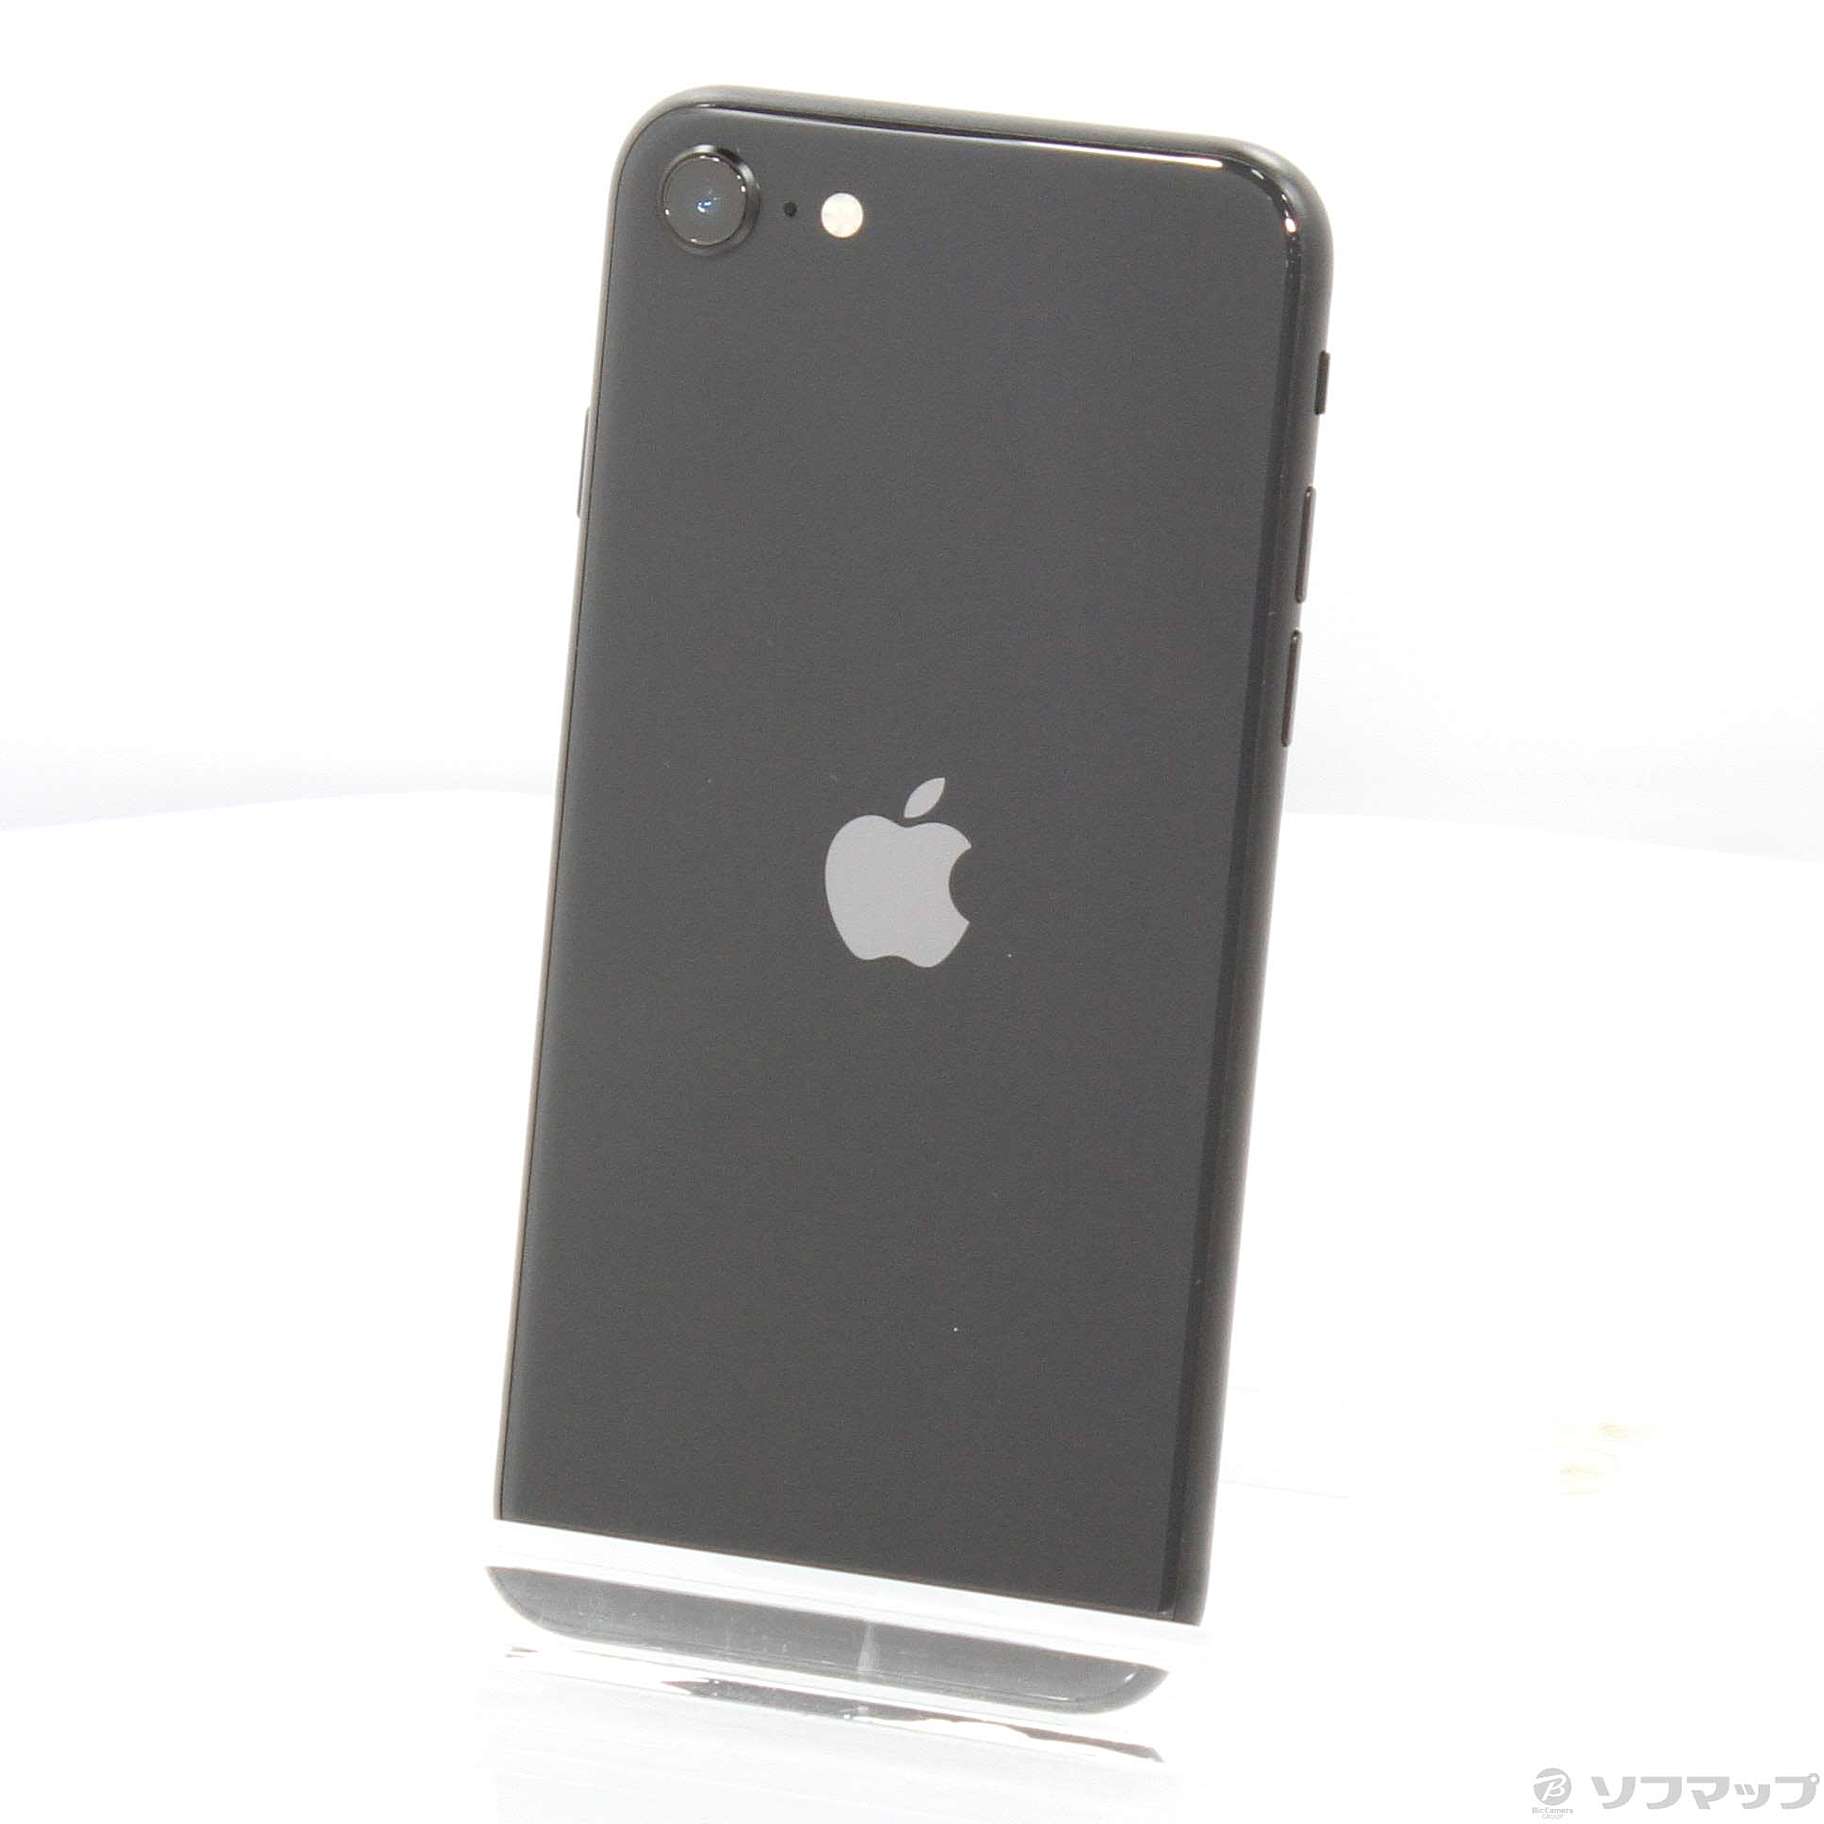 iPhone SE 第2世代 (SE2) ブラック 256GBバッテリー最大容量79%以下